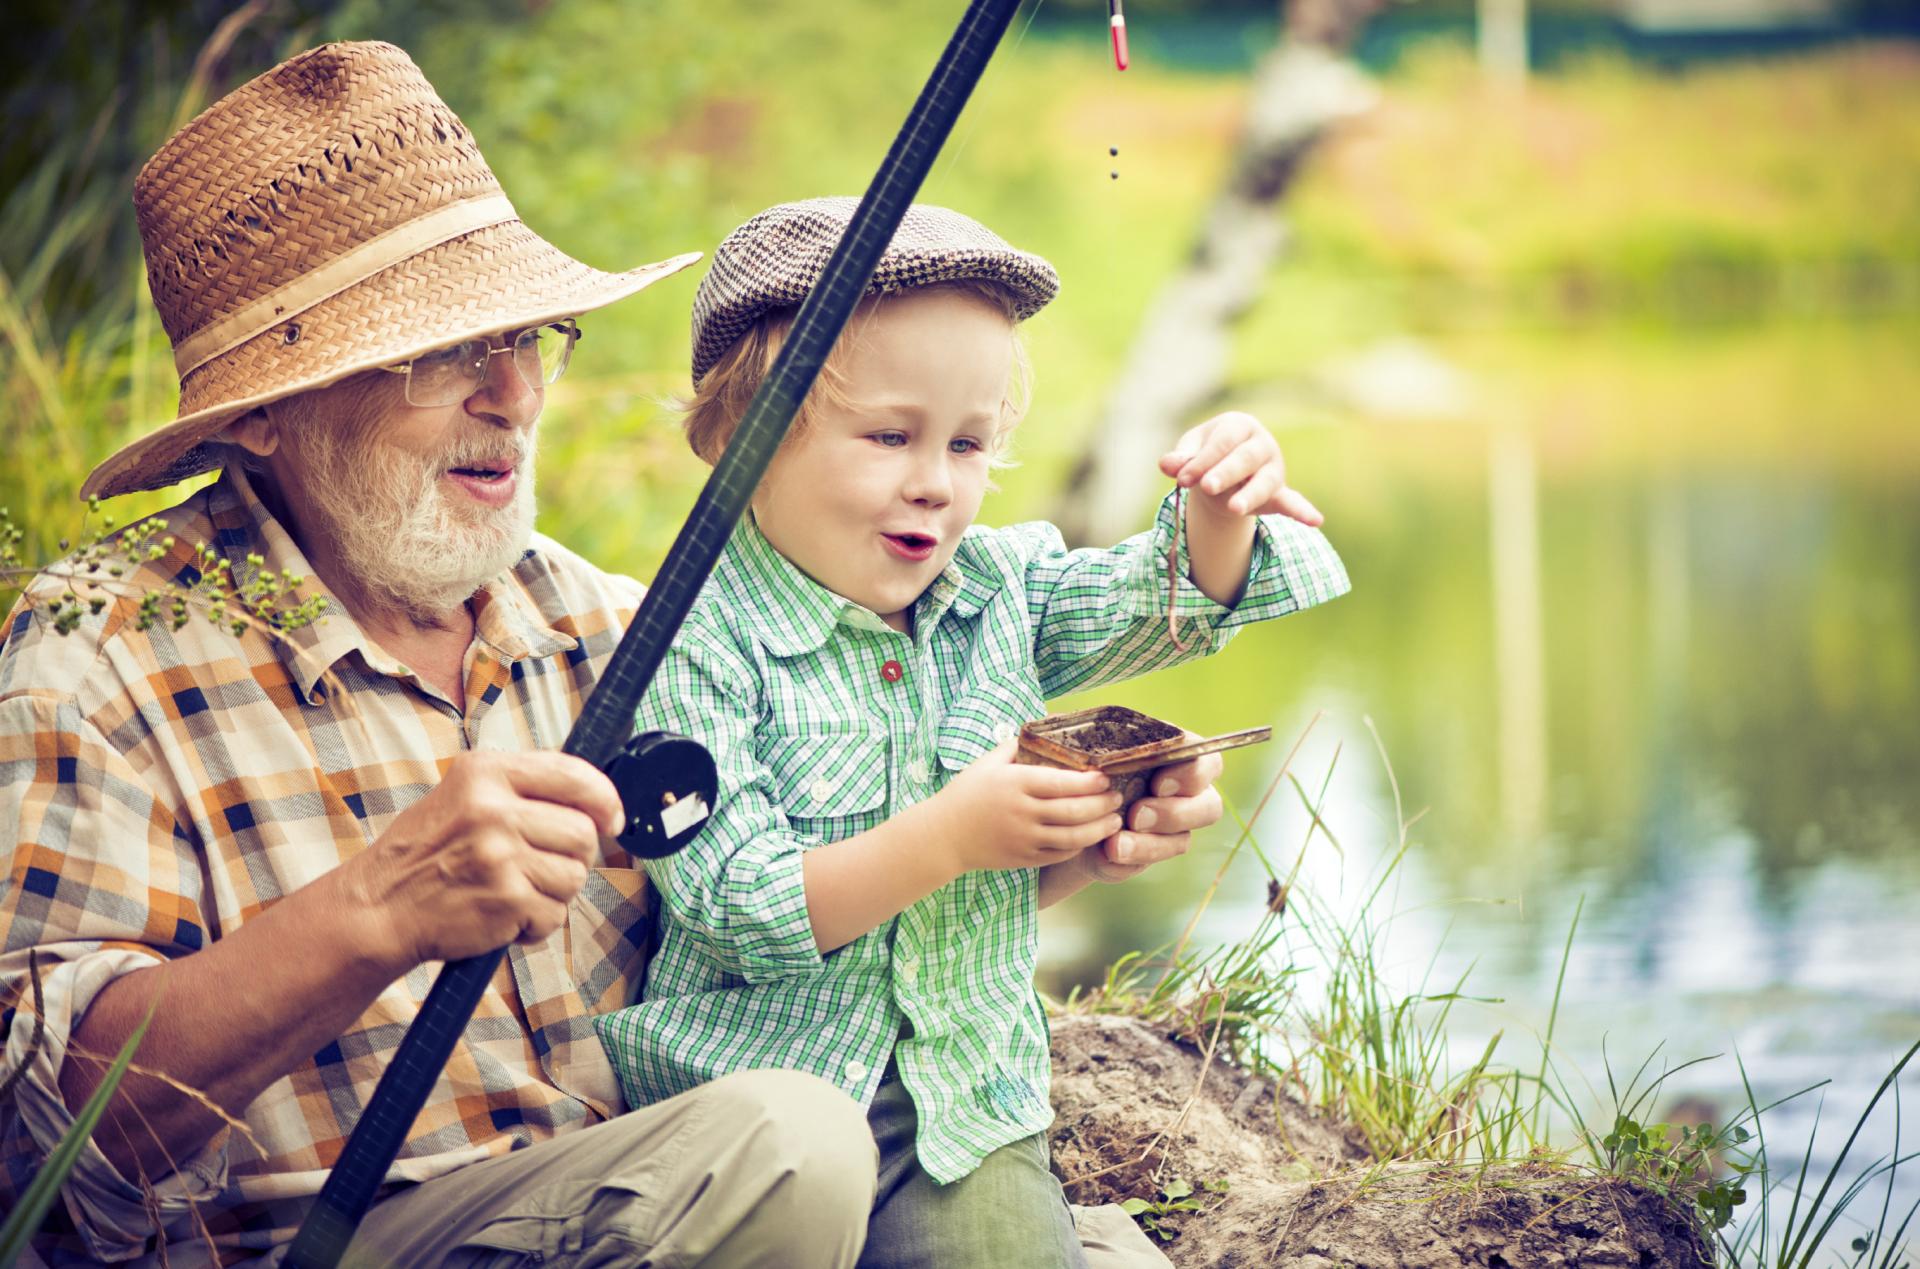 Сын ловит рыбу. Дед и внук рыбачат. Дед с внуком на рыбалке. Ltleirfcdyerjvyfhs,fkrt. Мальчик с дедушкой на рыбалке.